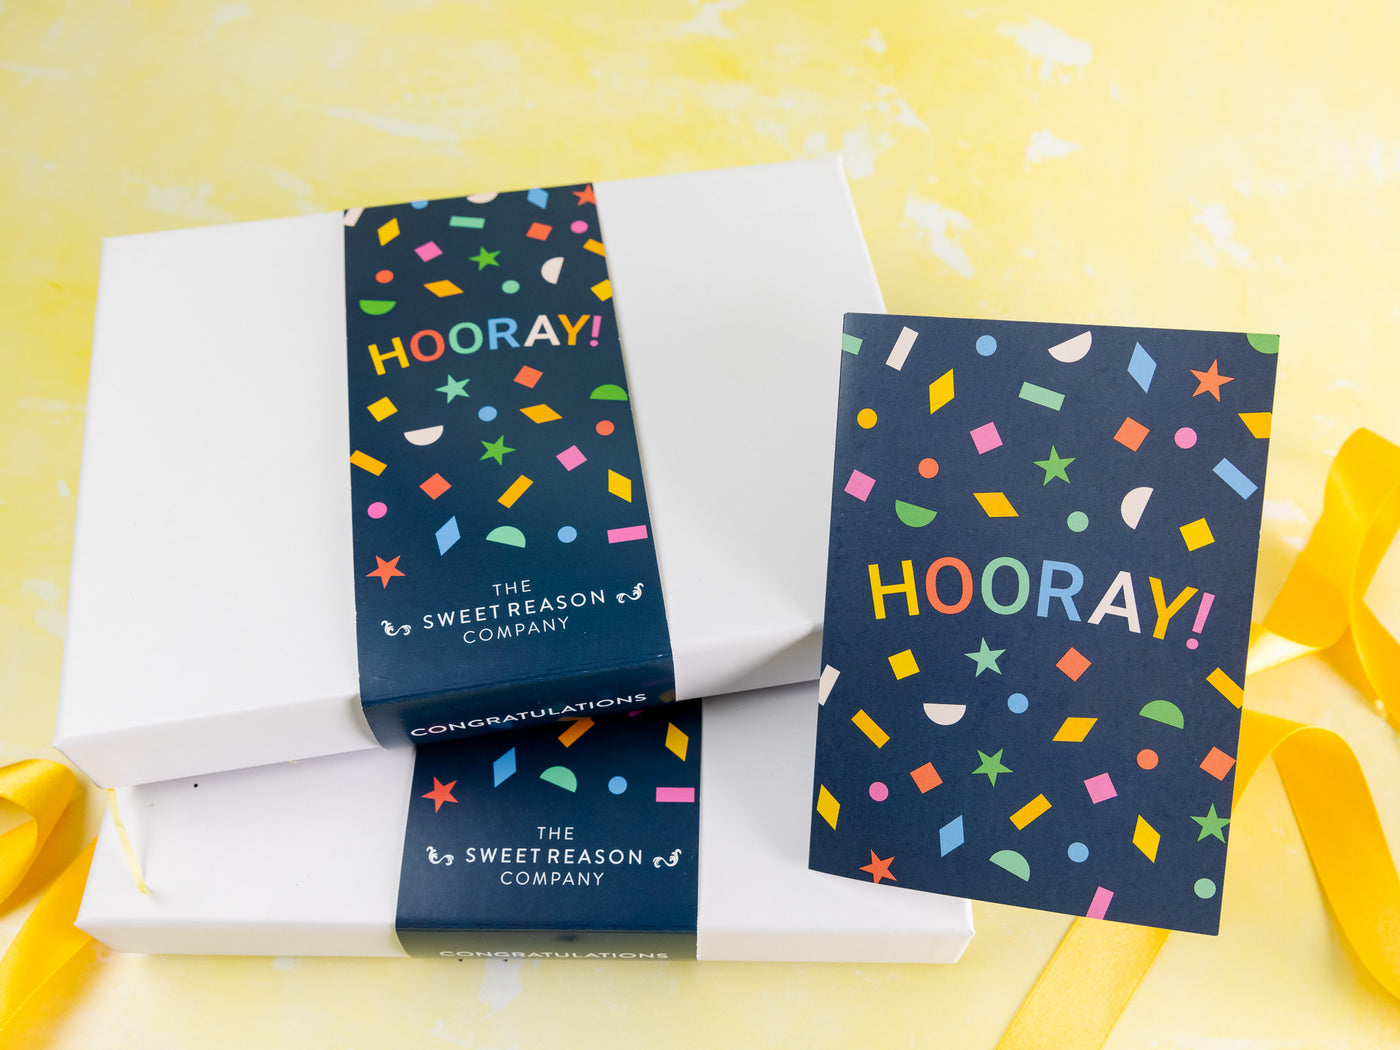 'Hooray!' Gin and Treats Gift Box